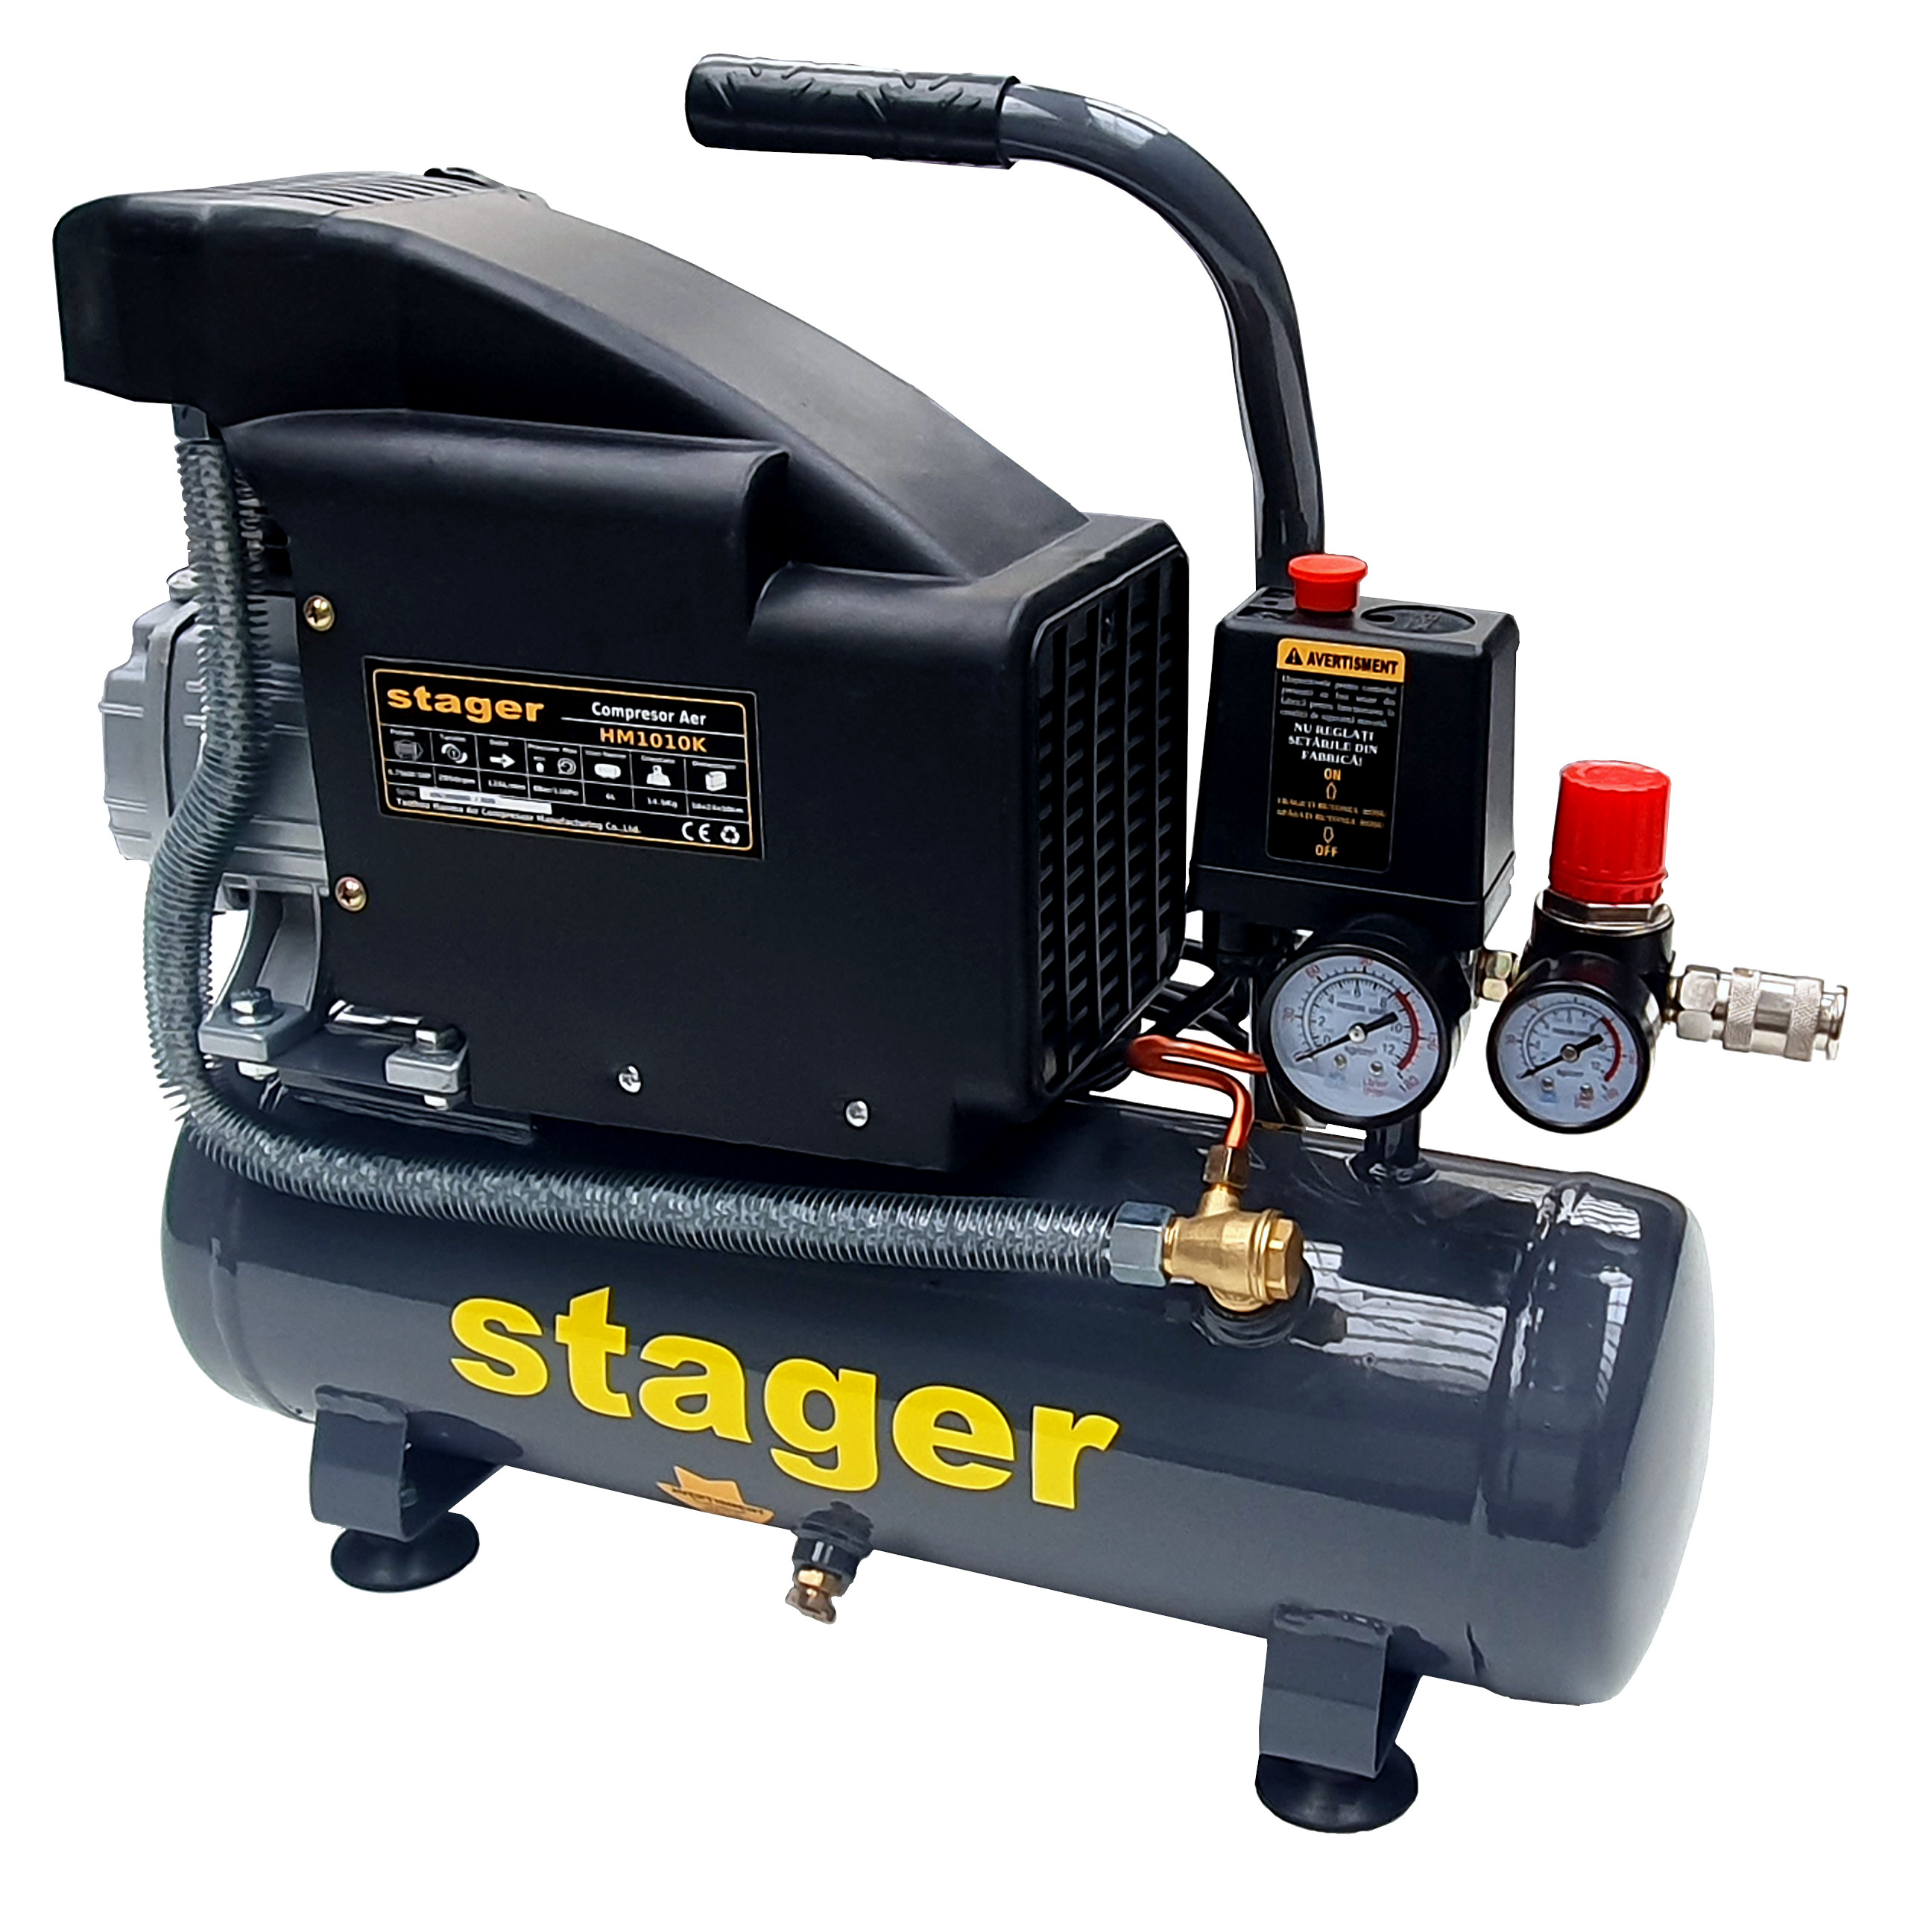 Stager HM1010K compresor aer, 6L, 8bar, 126L/min, monofazat, angrenare directa